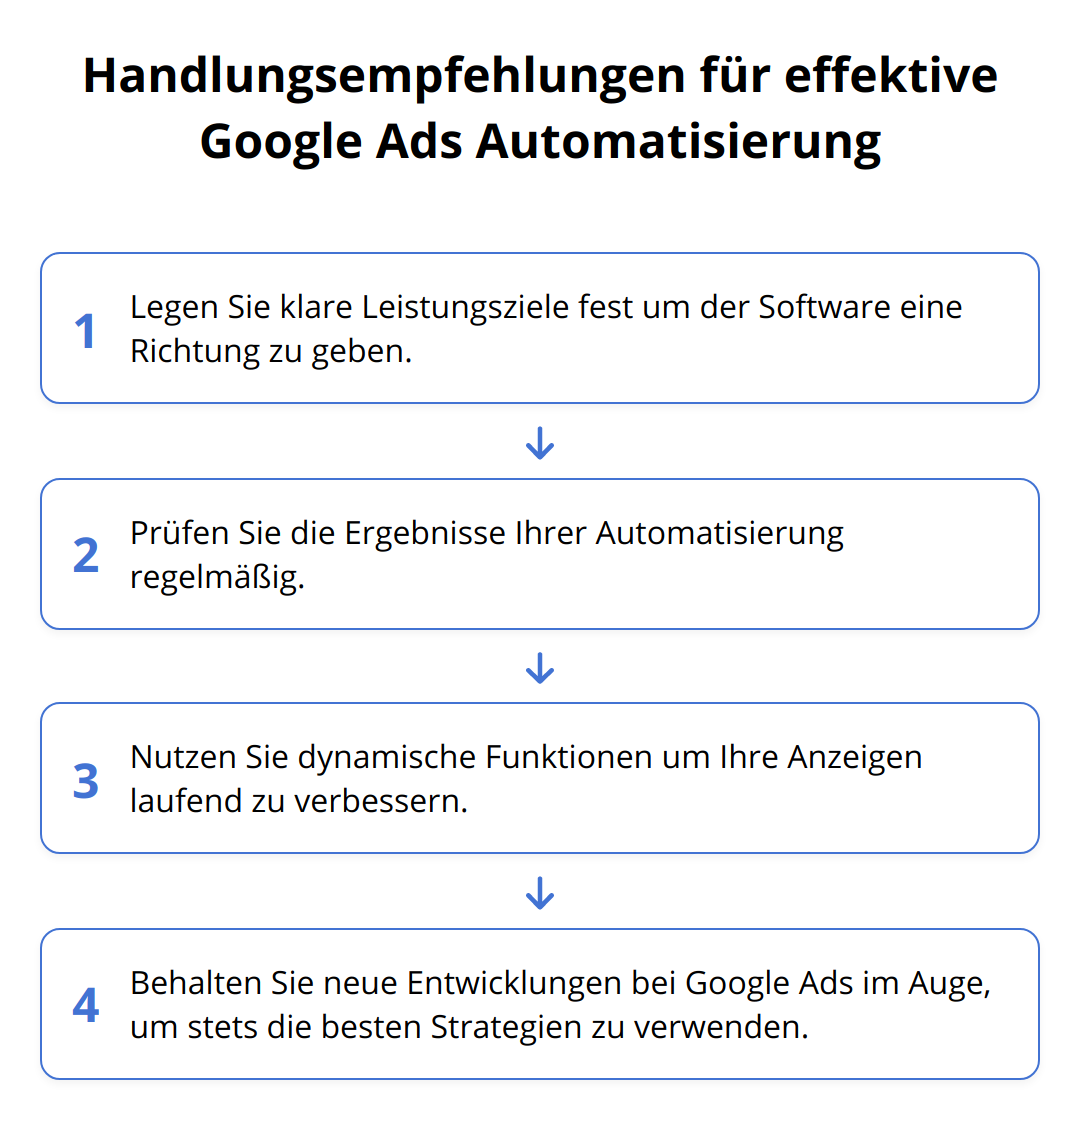 Flow Chart - Handlungsempfehlungen für effektive Google Ads Automatisierung